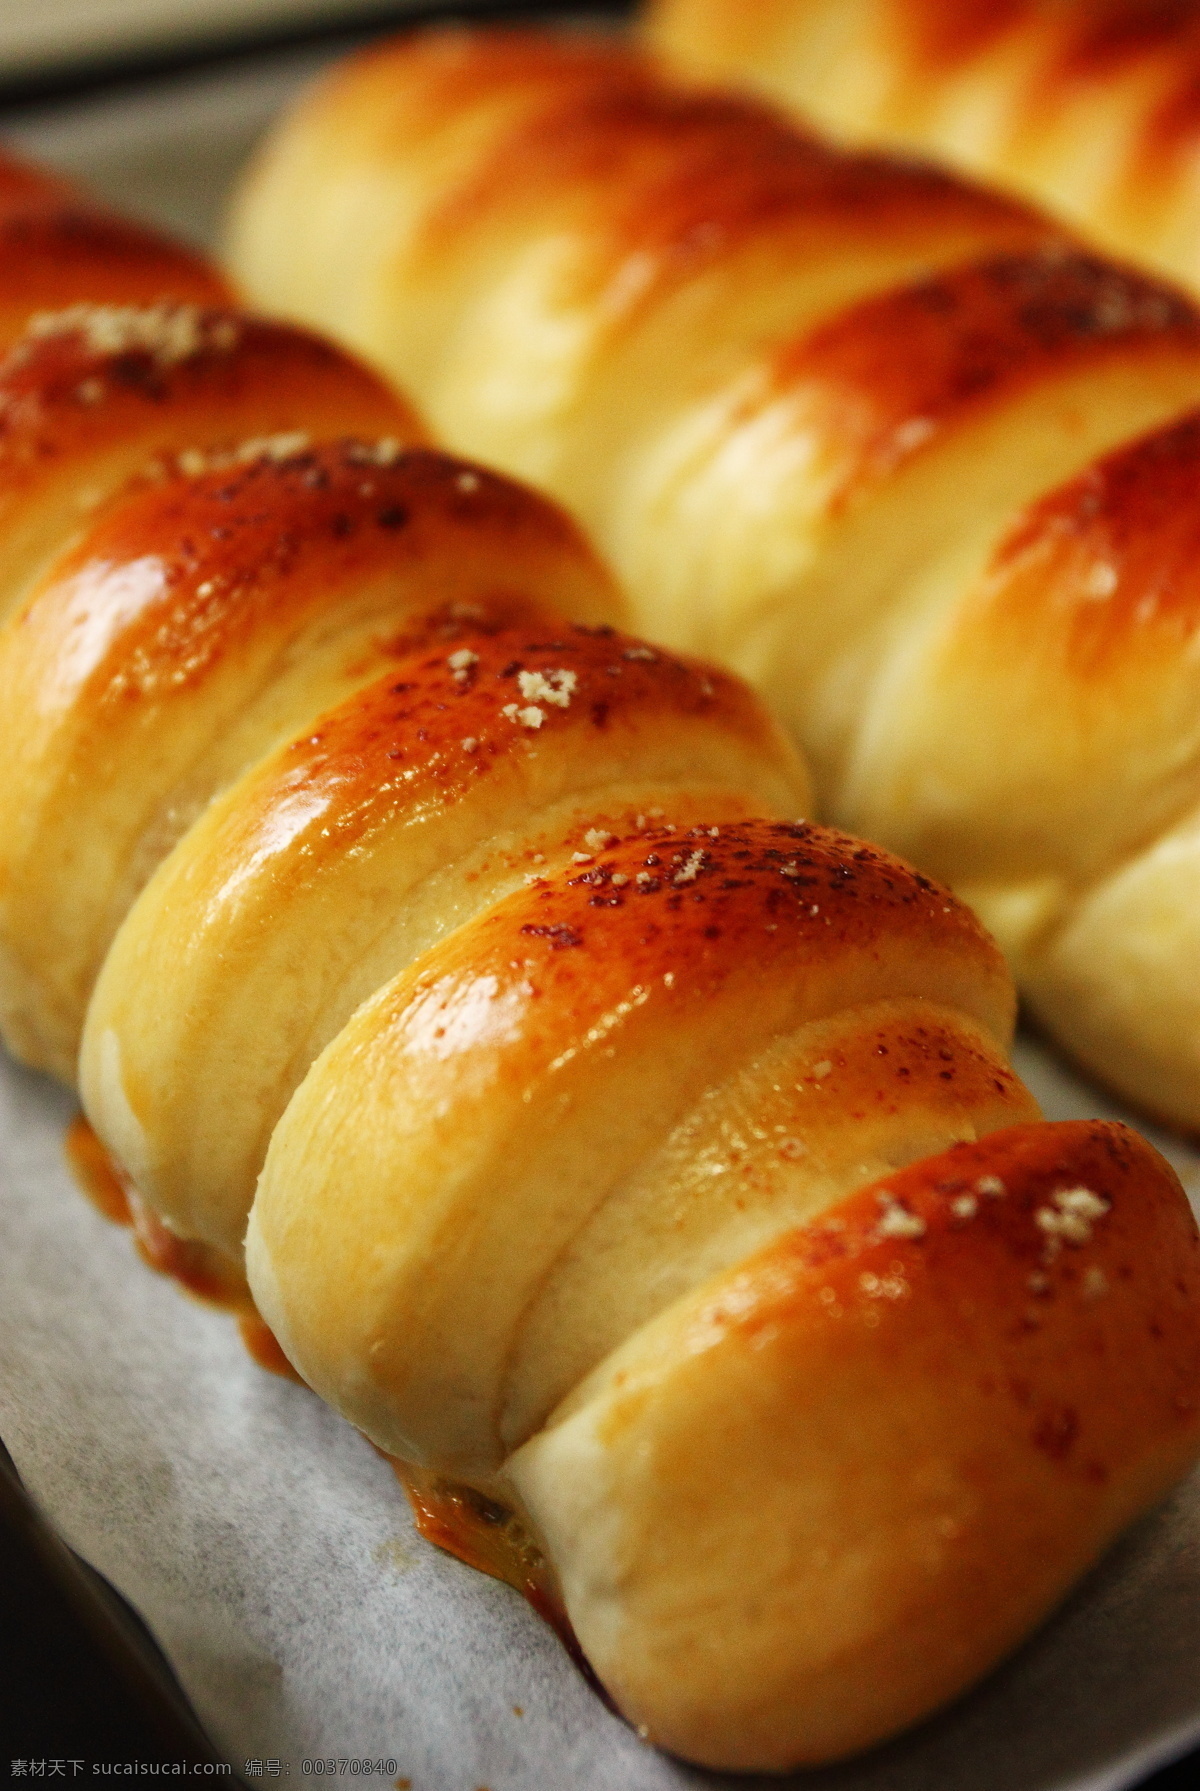 维也纳面包卷 面包卷 毛毛虫面包 香肠面包 diy 手工 面包 手工面包 西餐美食 餐饮美食